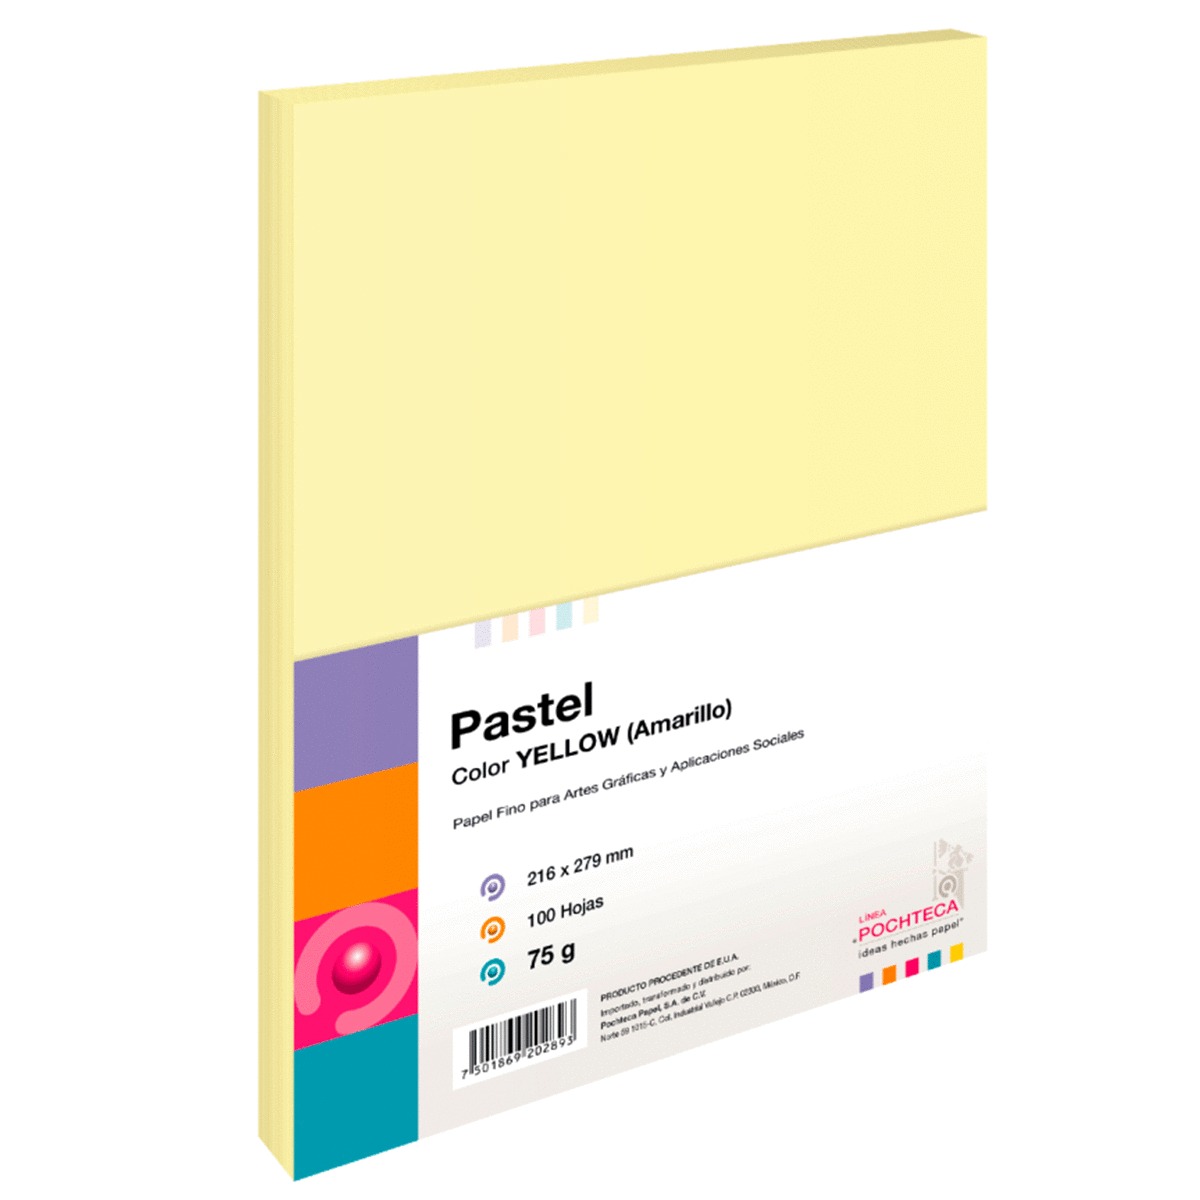 Hojas de Color Pochteca Pastel / Paquete 100 hojas / Carta / Amarillo pastel / 75 gr